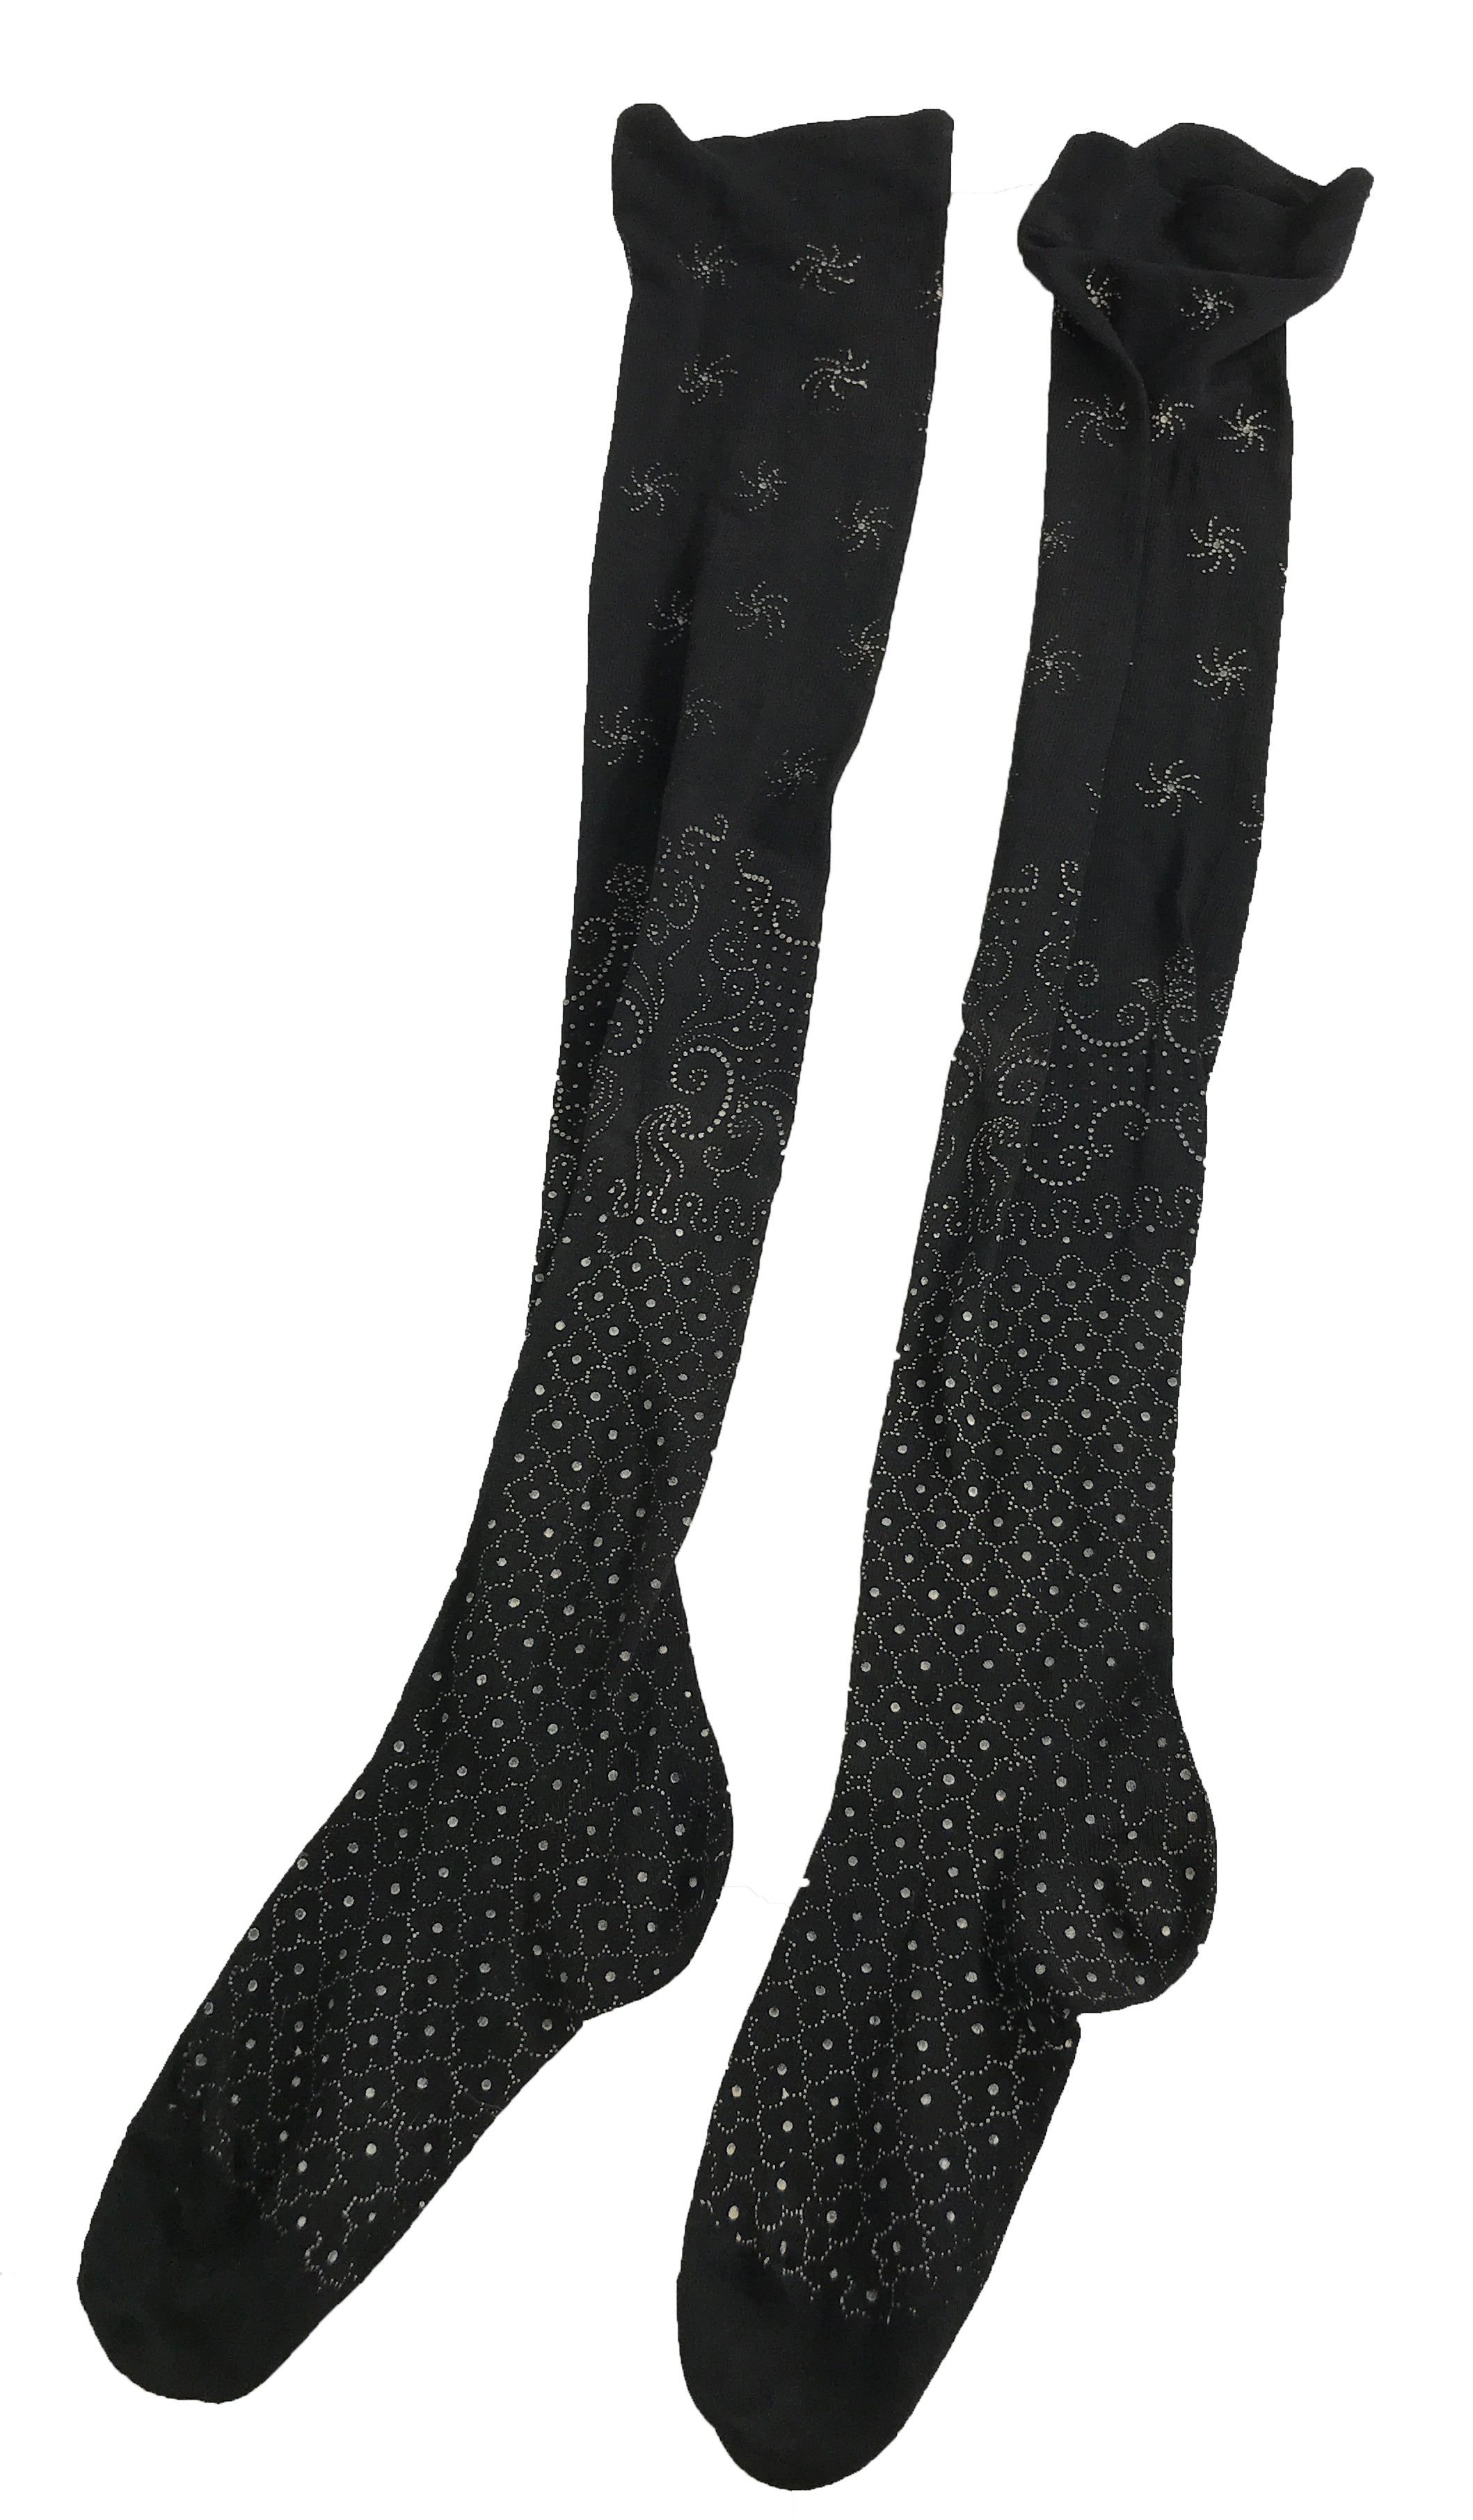 Vintage Edwardian Black Patterned Socks